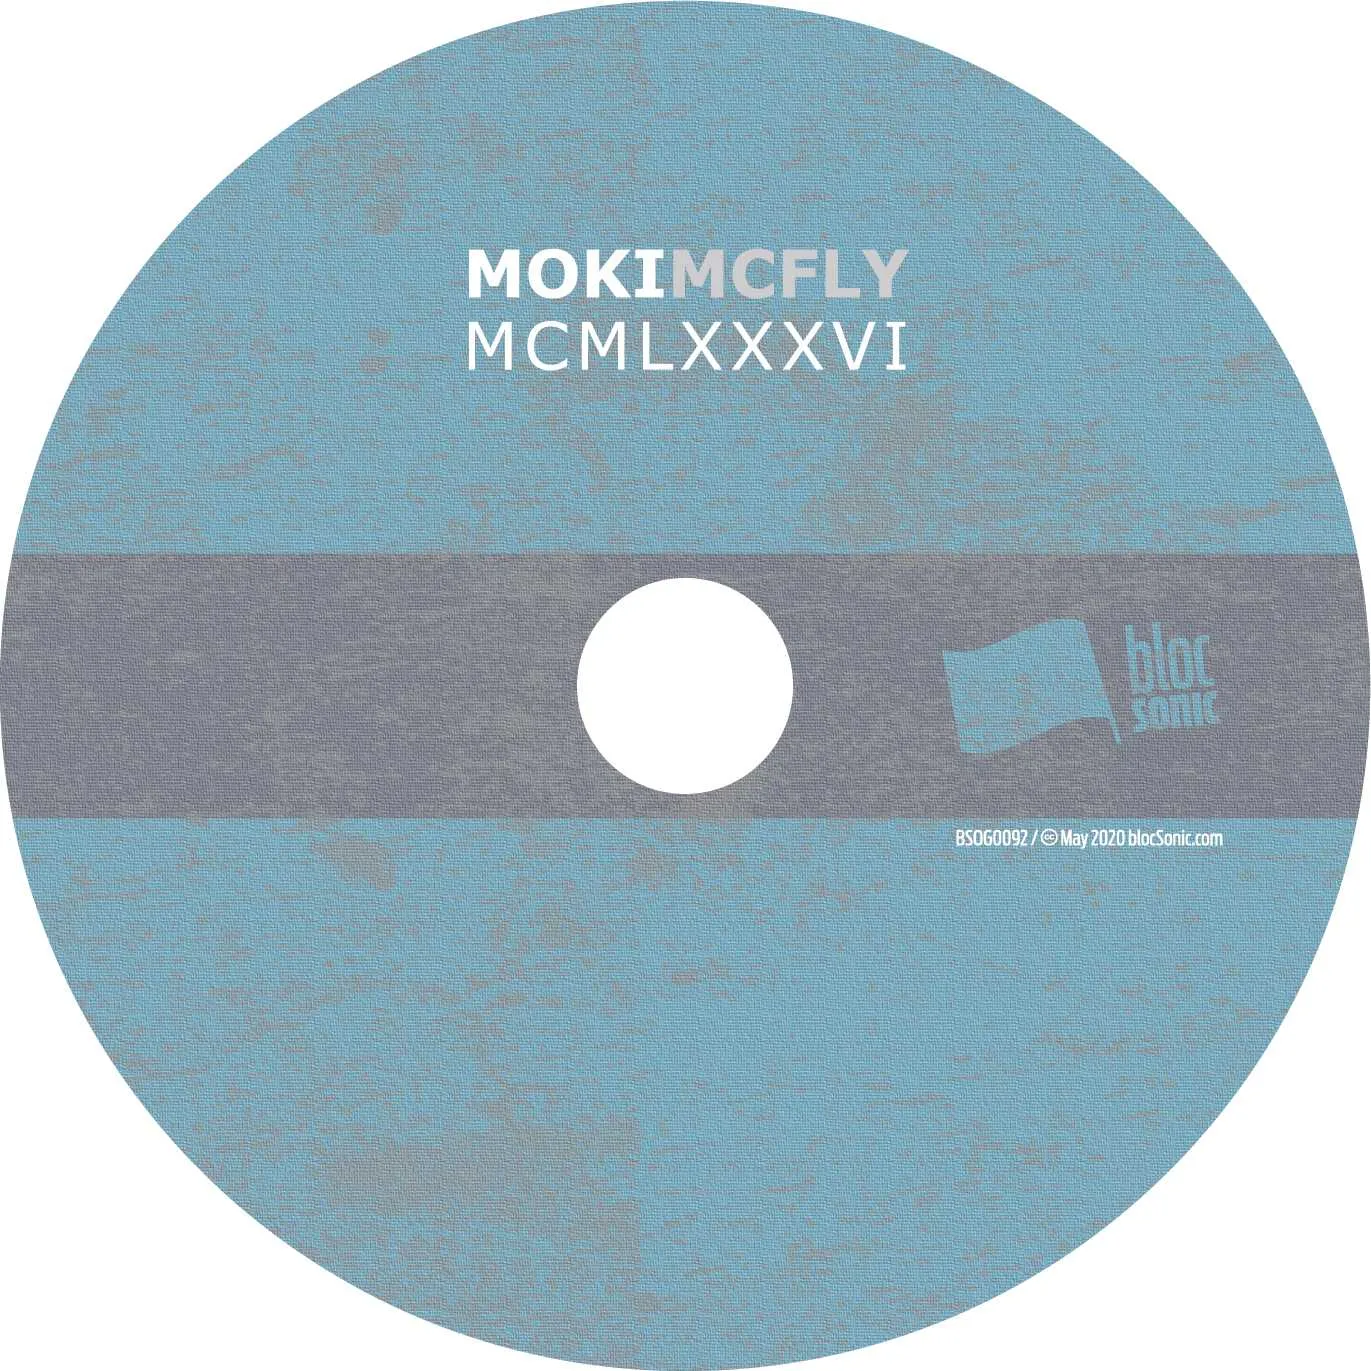 Album disc for “MCMLXXXVI” by Moki Mcfly